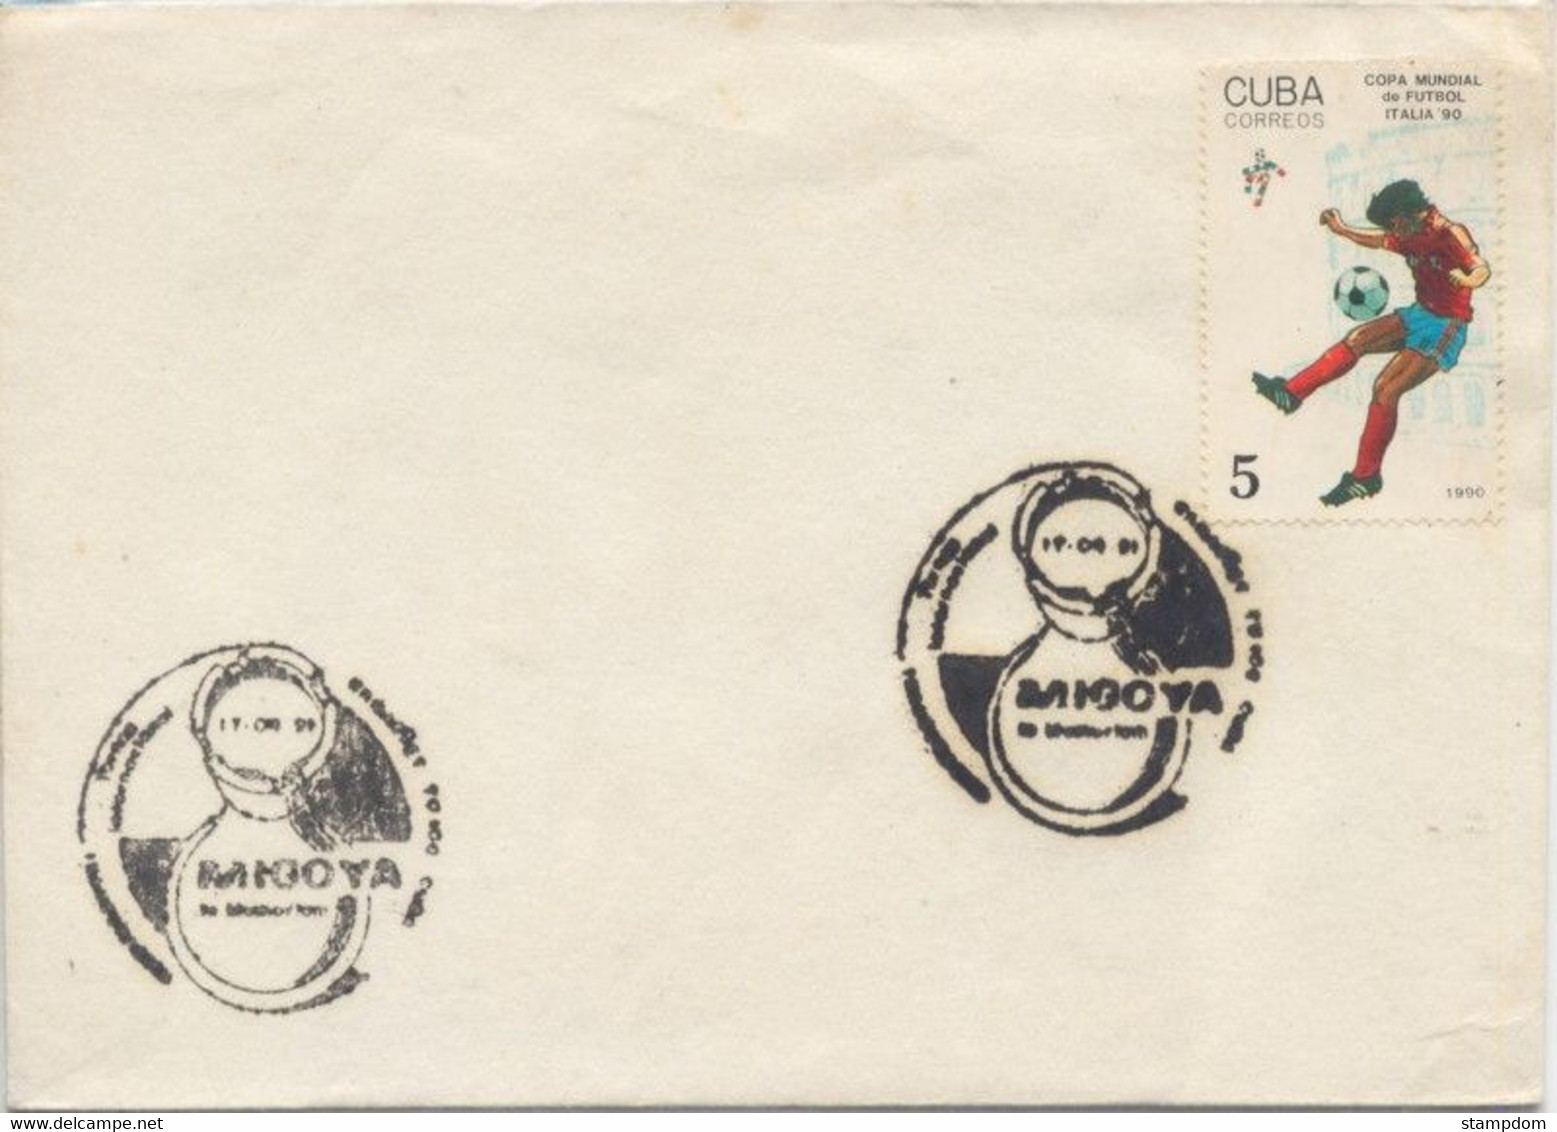 CUBA 1991 MIGOYA Special Cancel Event COVER @D1713 - Cartas & Documentos